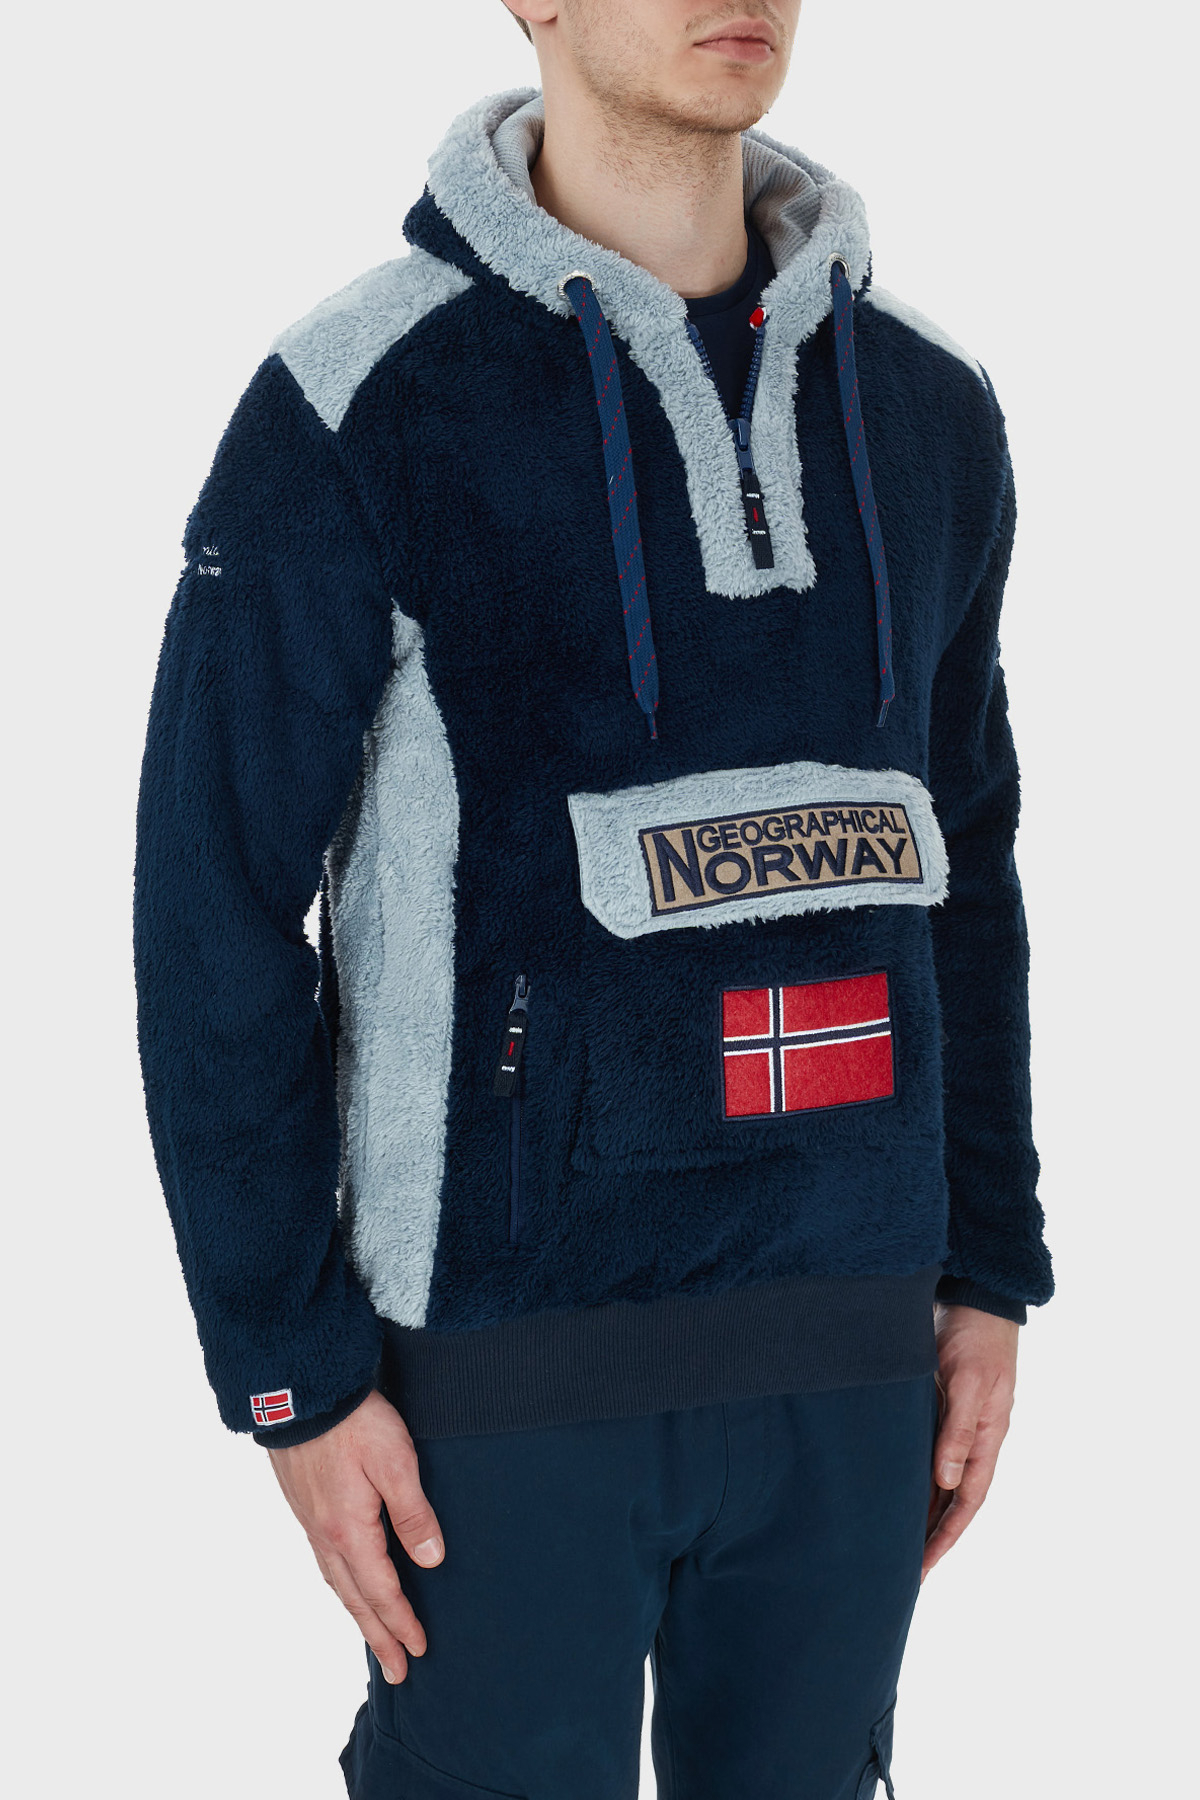 Norway Geographical Kapüşonlu Yarım Fermuarlı Outdoor Polar Erkek Sweat GYMCLASSSHERCO LACİVERT